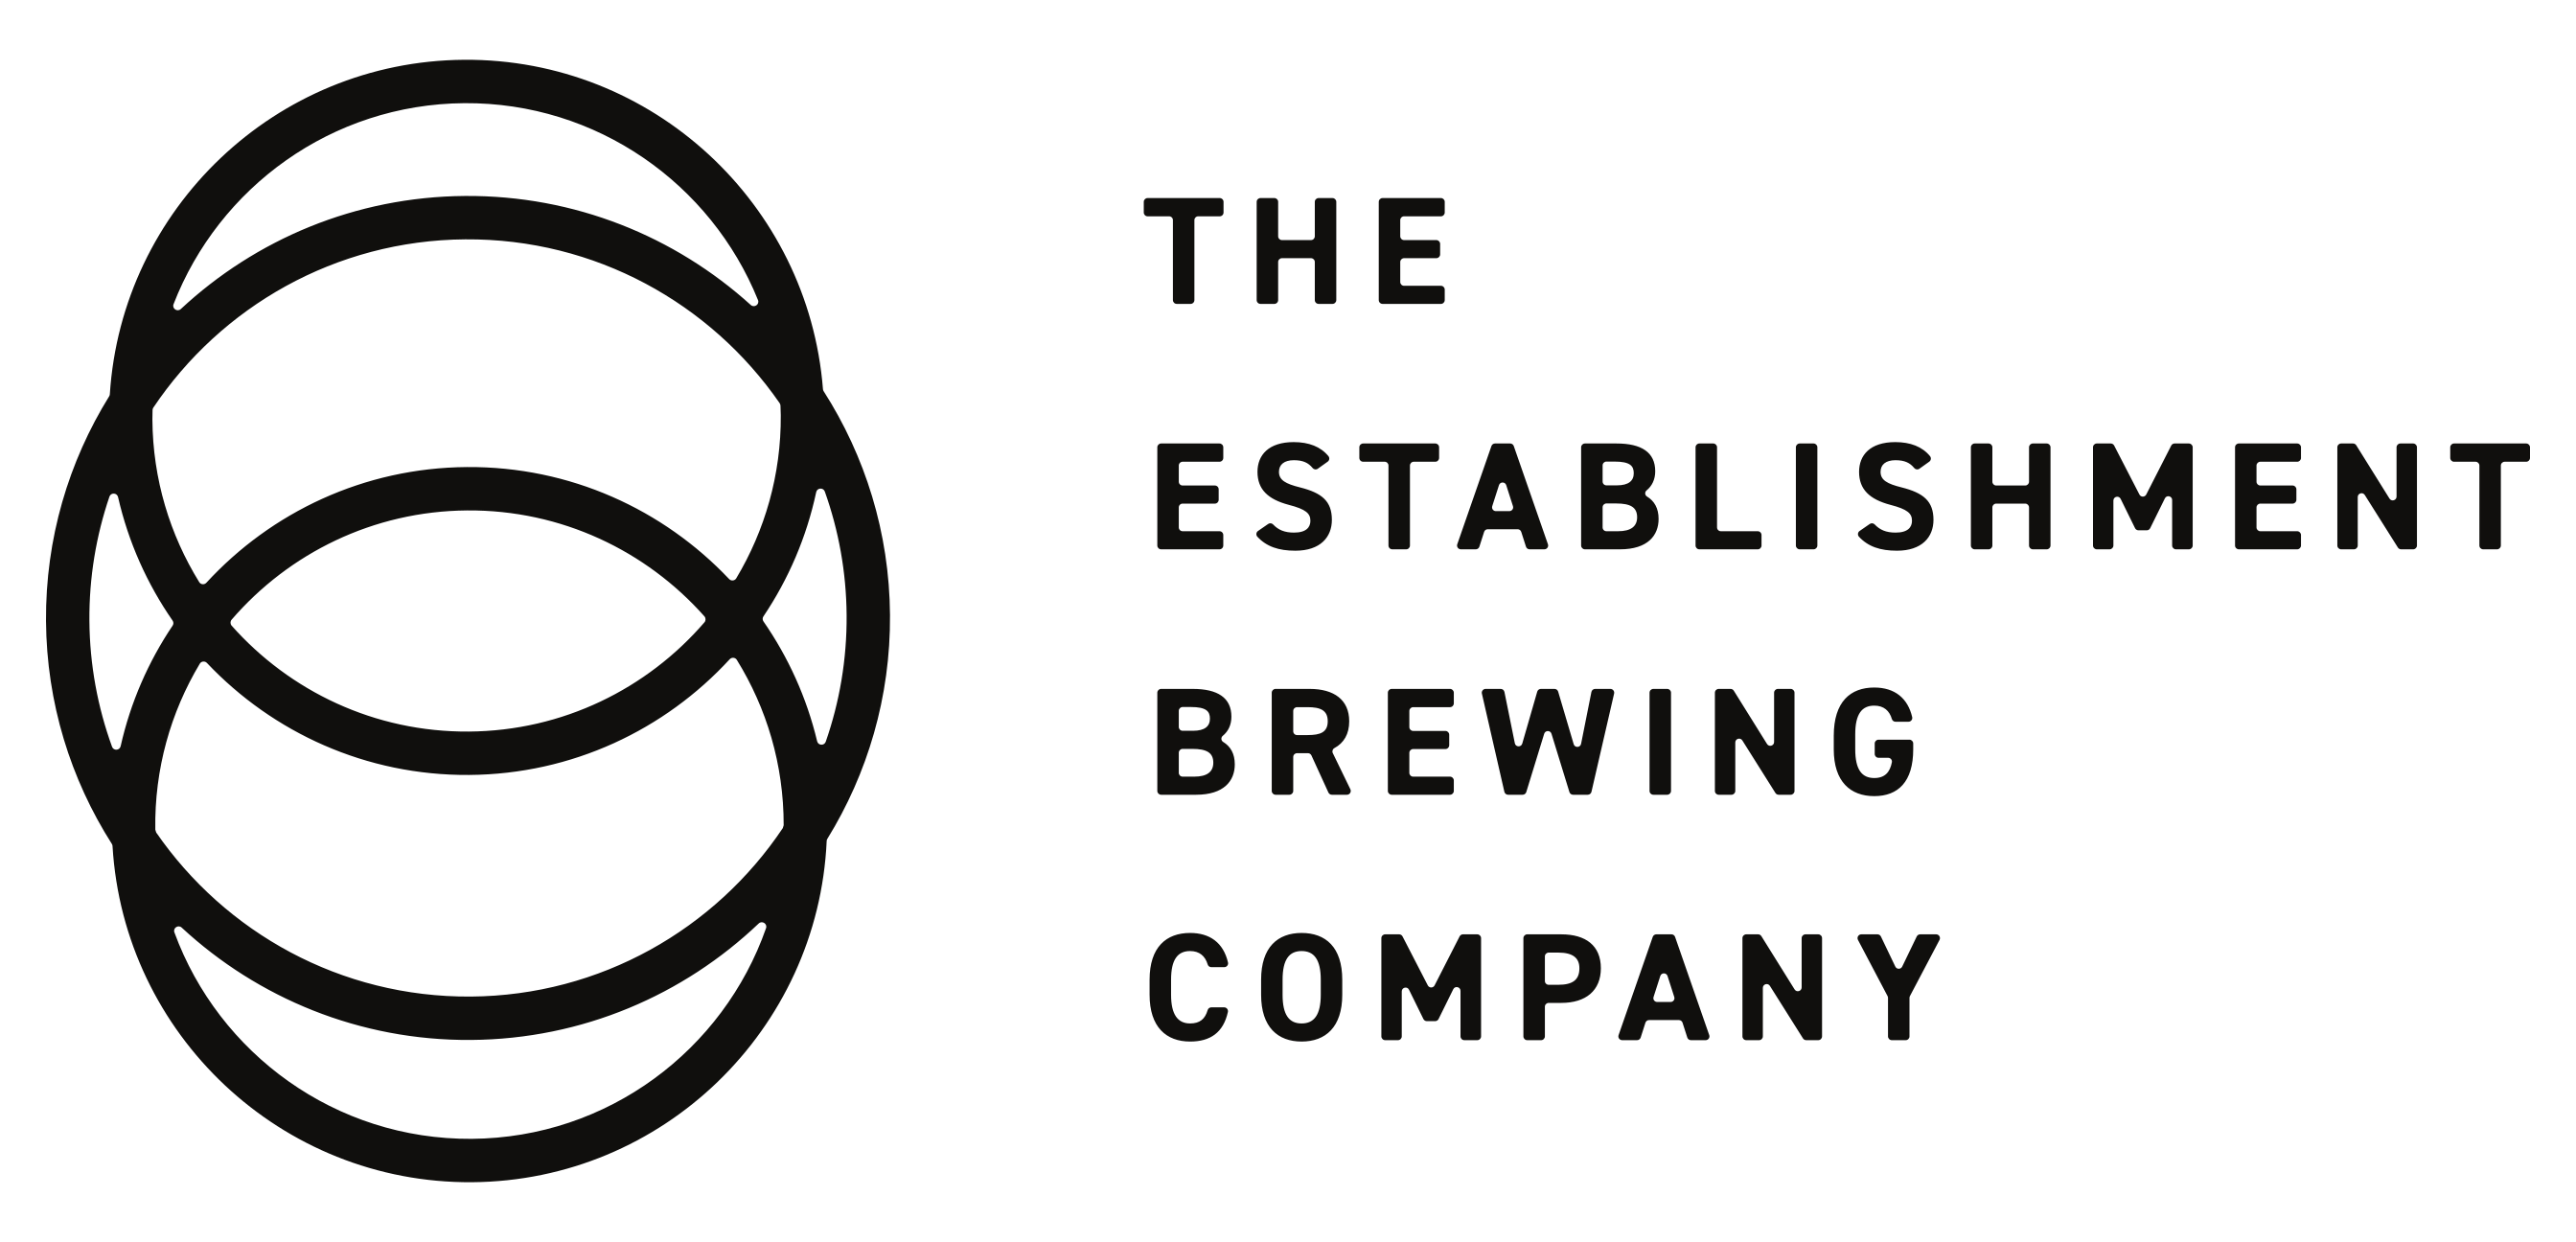 The Establishment Brewing Company